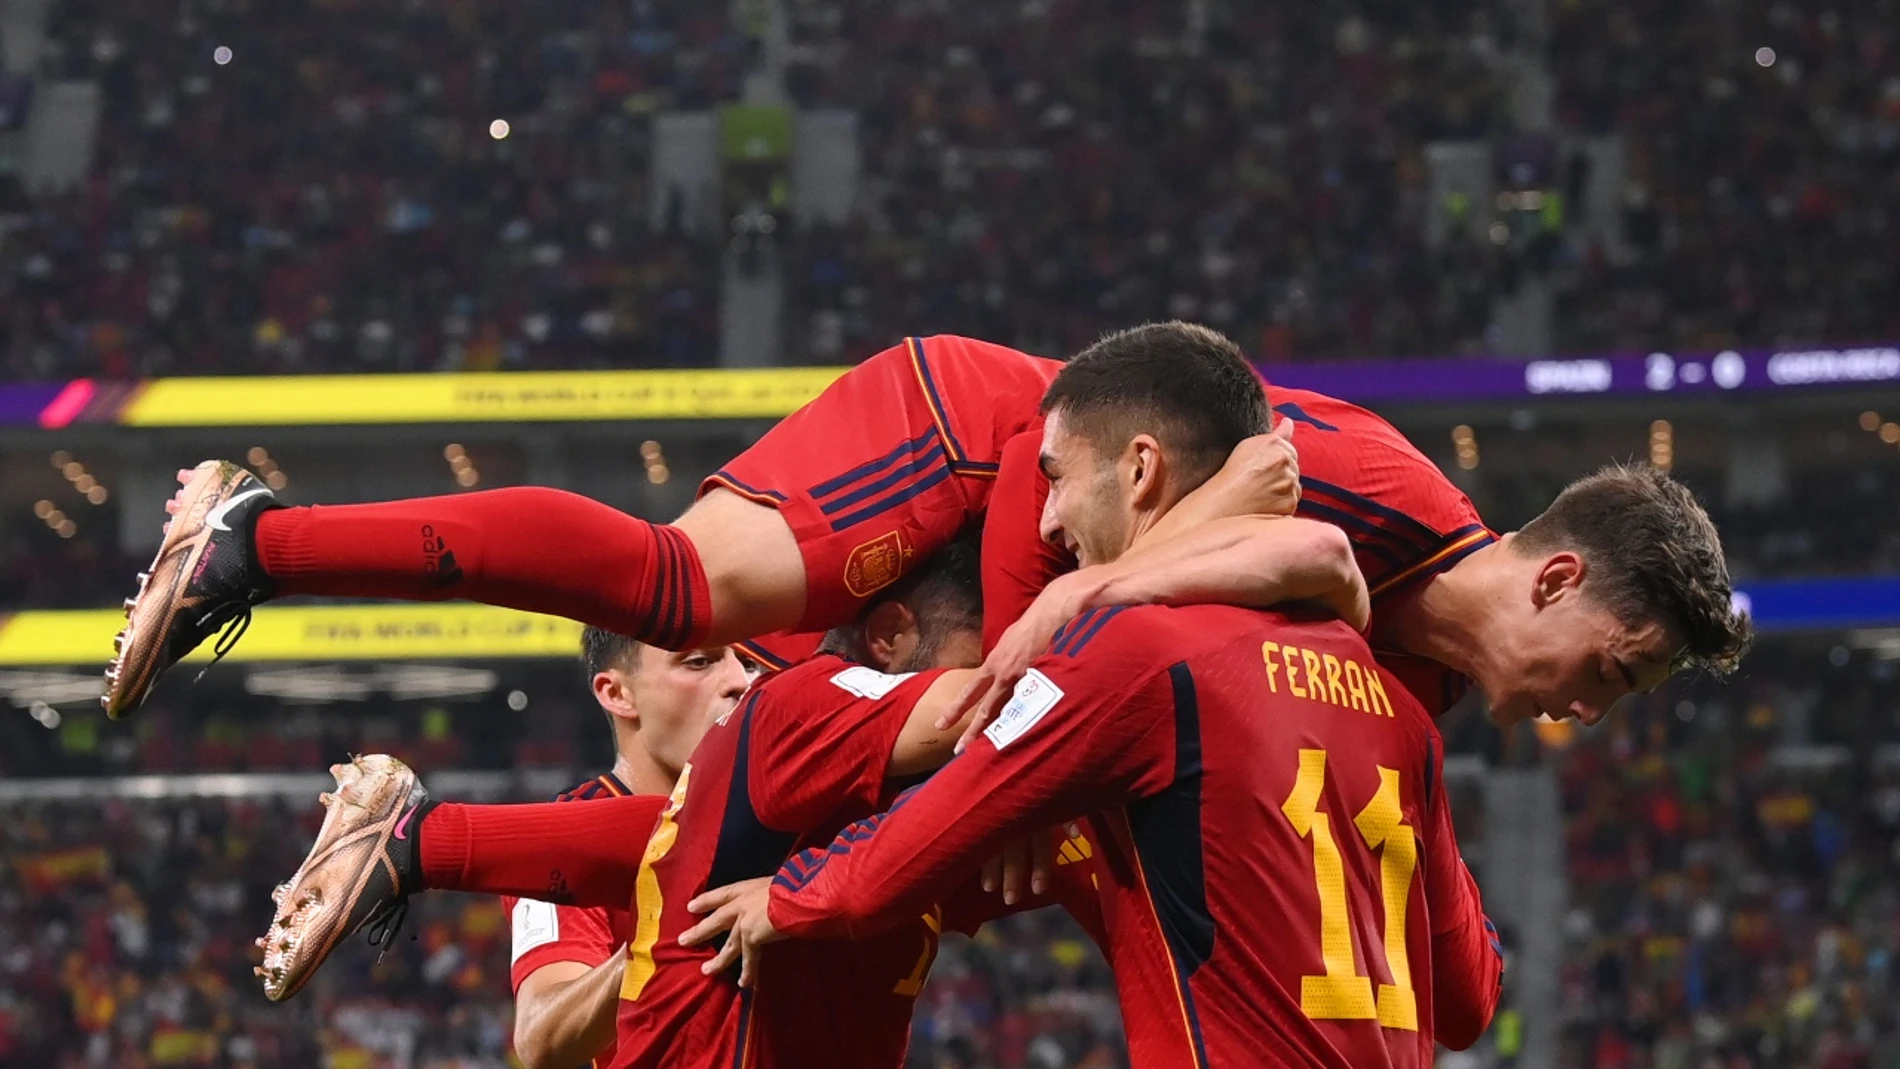 España - Costa Rica, fútbol en directo: Partido, goles y resultado del Mundial de Qatar 2022 (6-0)